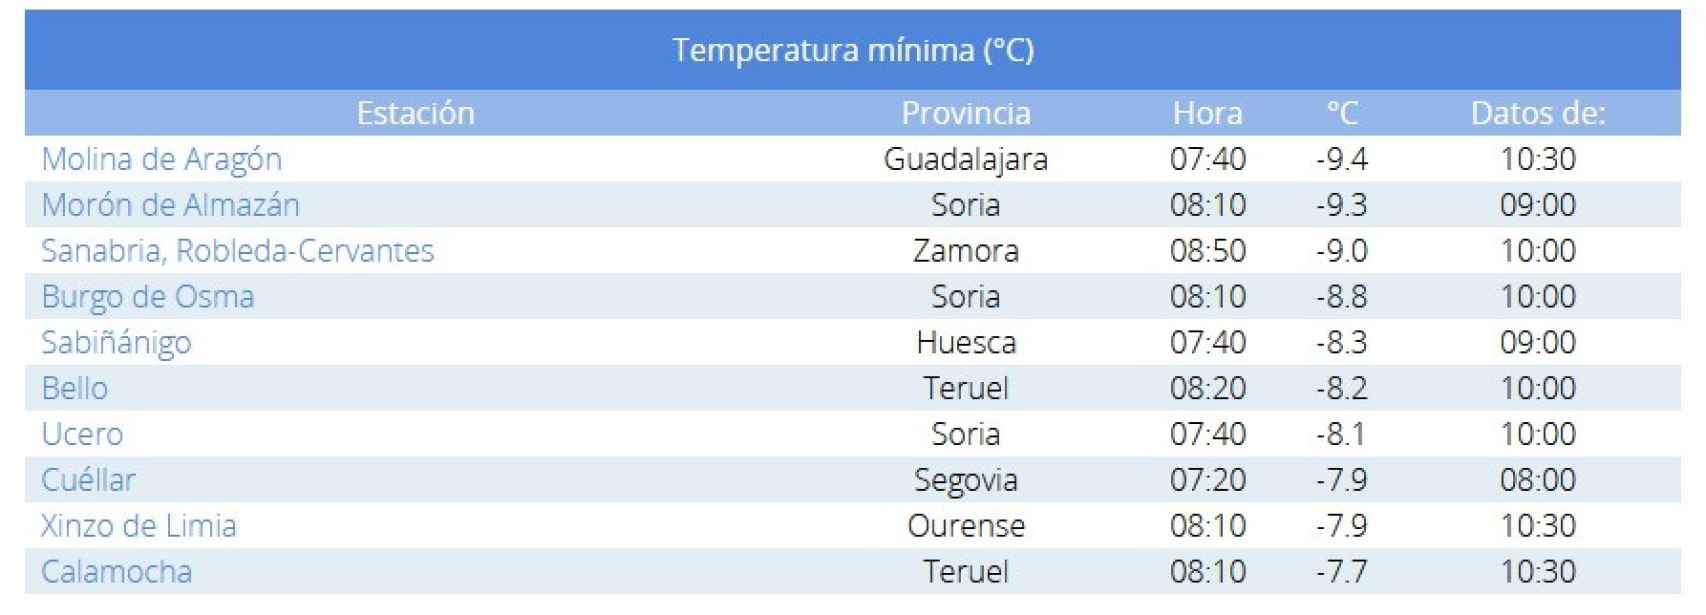 Temperaturas mínimas este domingo 5 de febrero